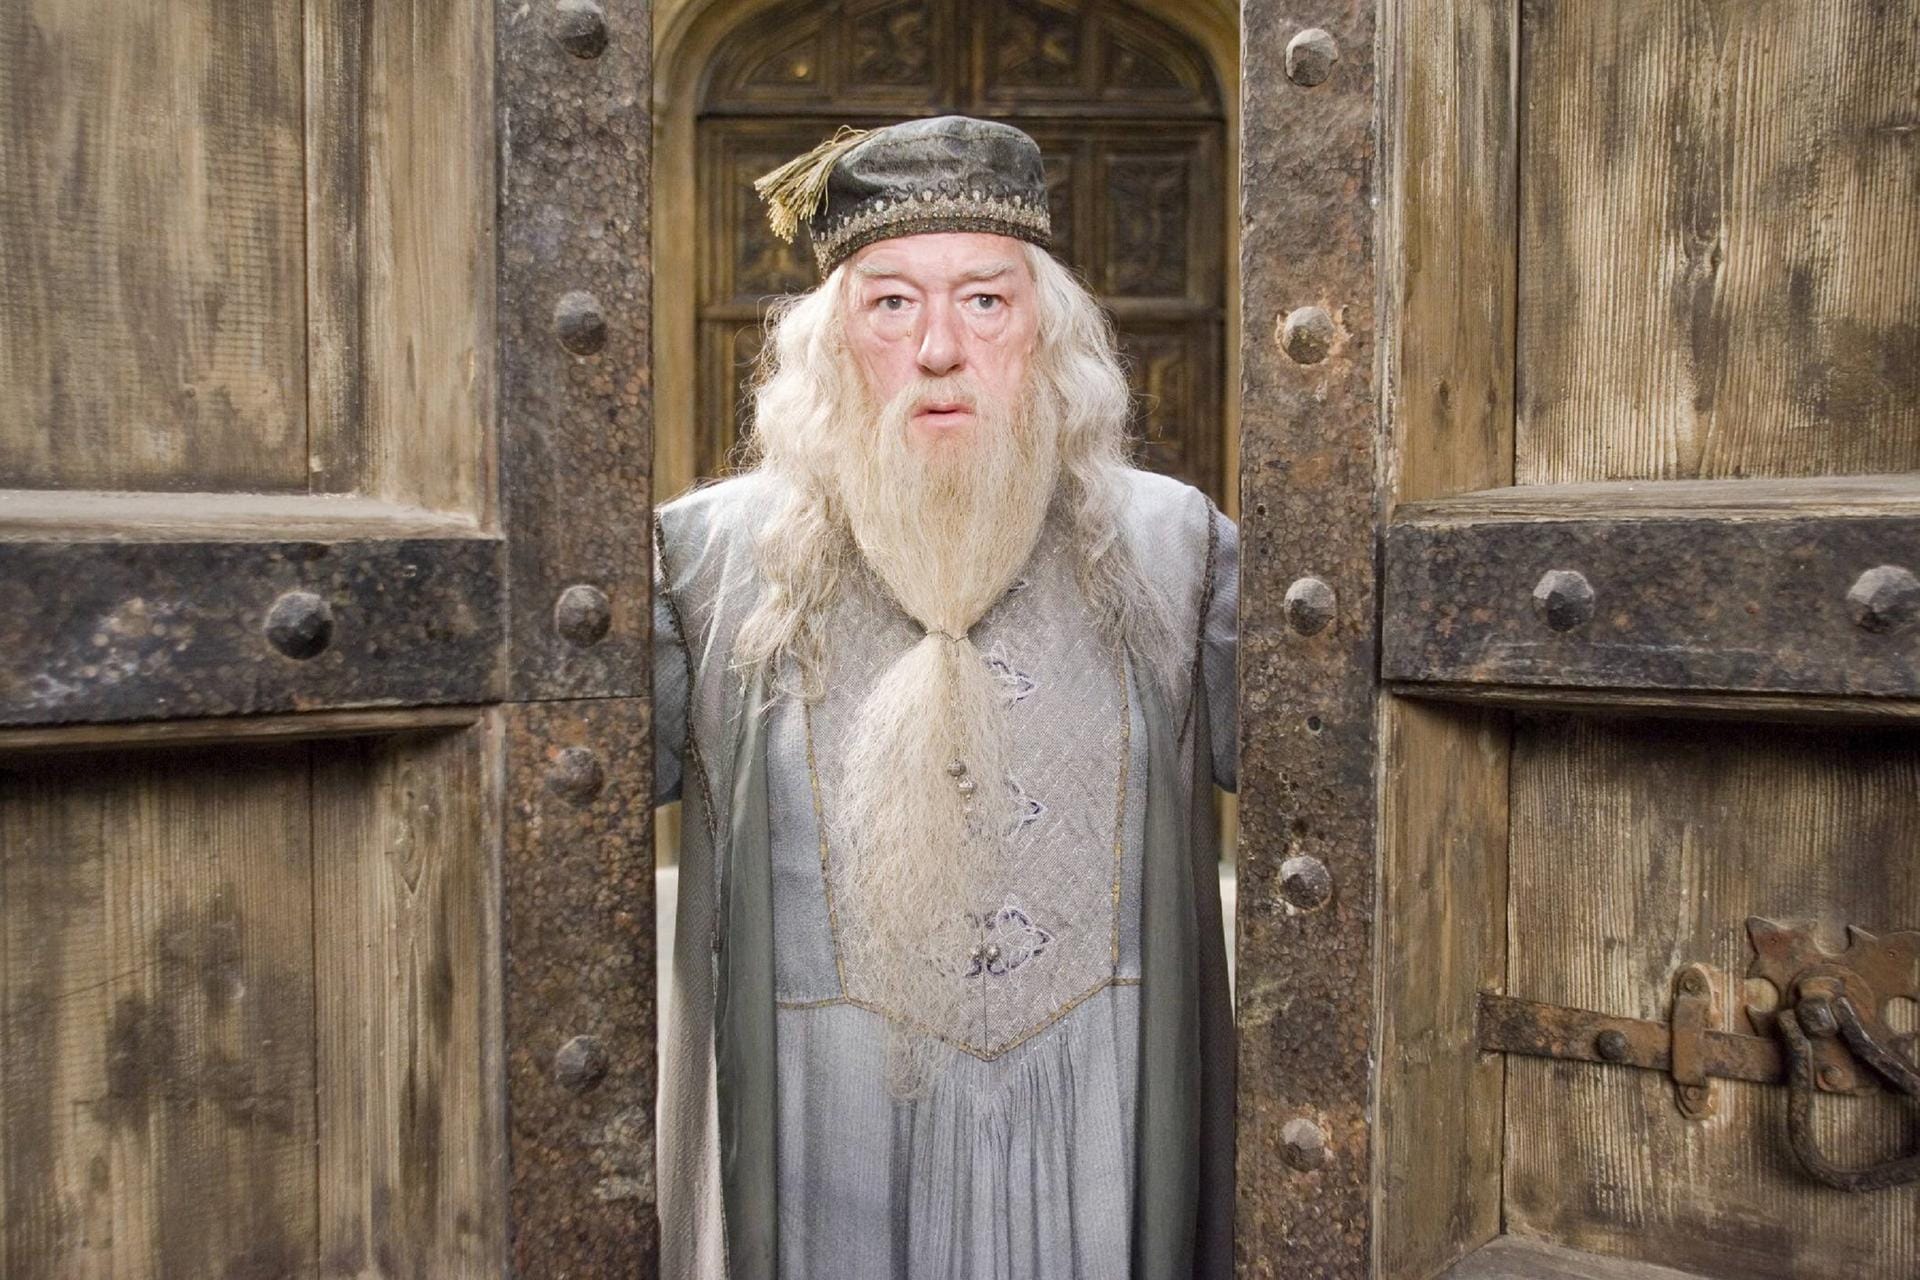 Ab dem dritten Teil der "Harry Potter"-Filme wurde Dumbledore von Michael Gambon gespielt. Zuerst hatte Richard Harris die Rolle des Schuldirektors übernommen. Der Schauspieler erlag 2002 seiner Krebserkrankung.